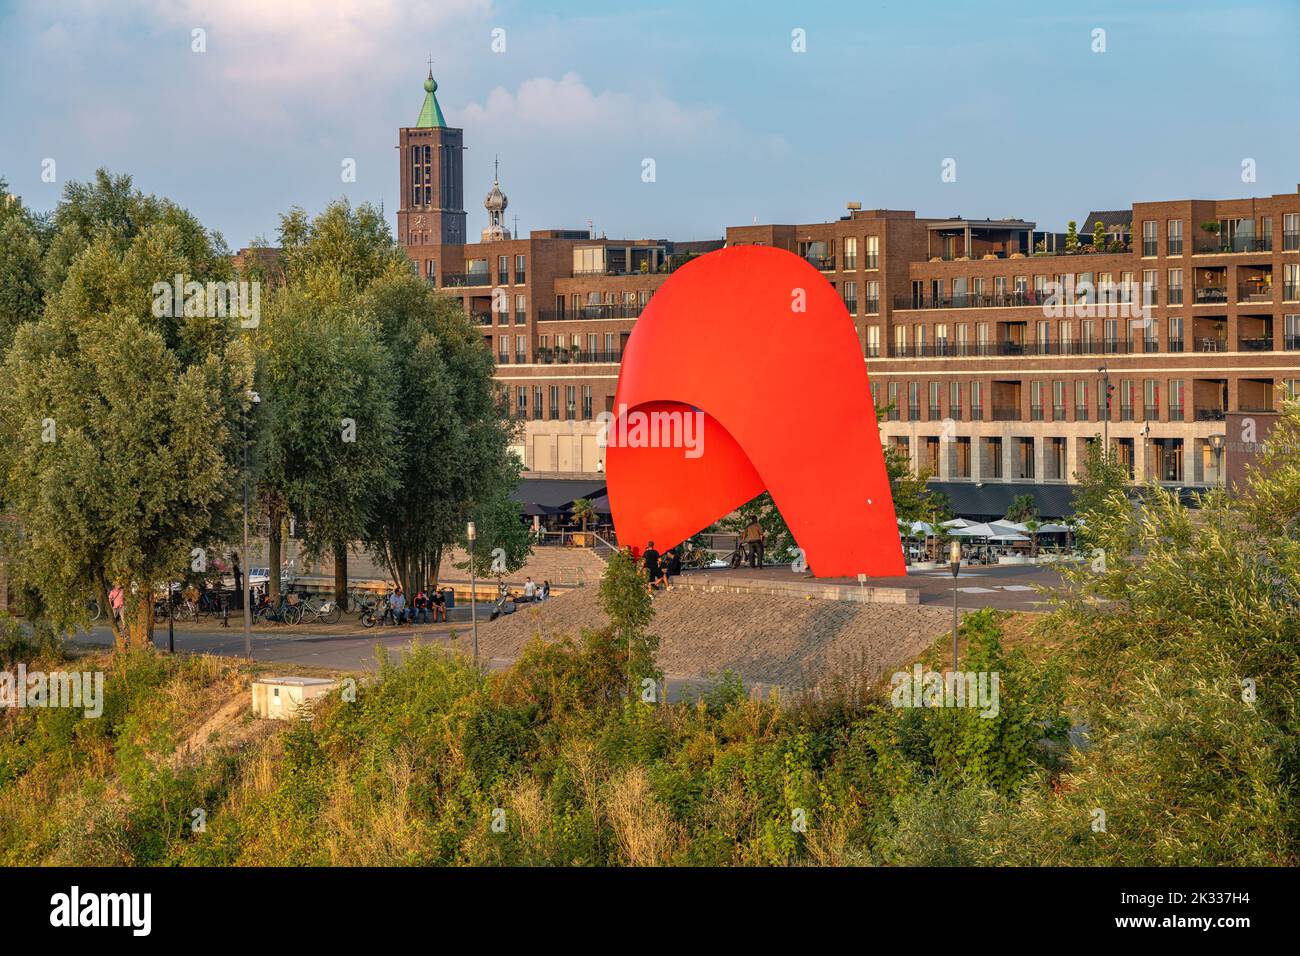 Skulptur Tango en Venlo, Niederlande | Sculpture Tango en Venlo, Países Bajos Foto de stock